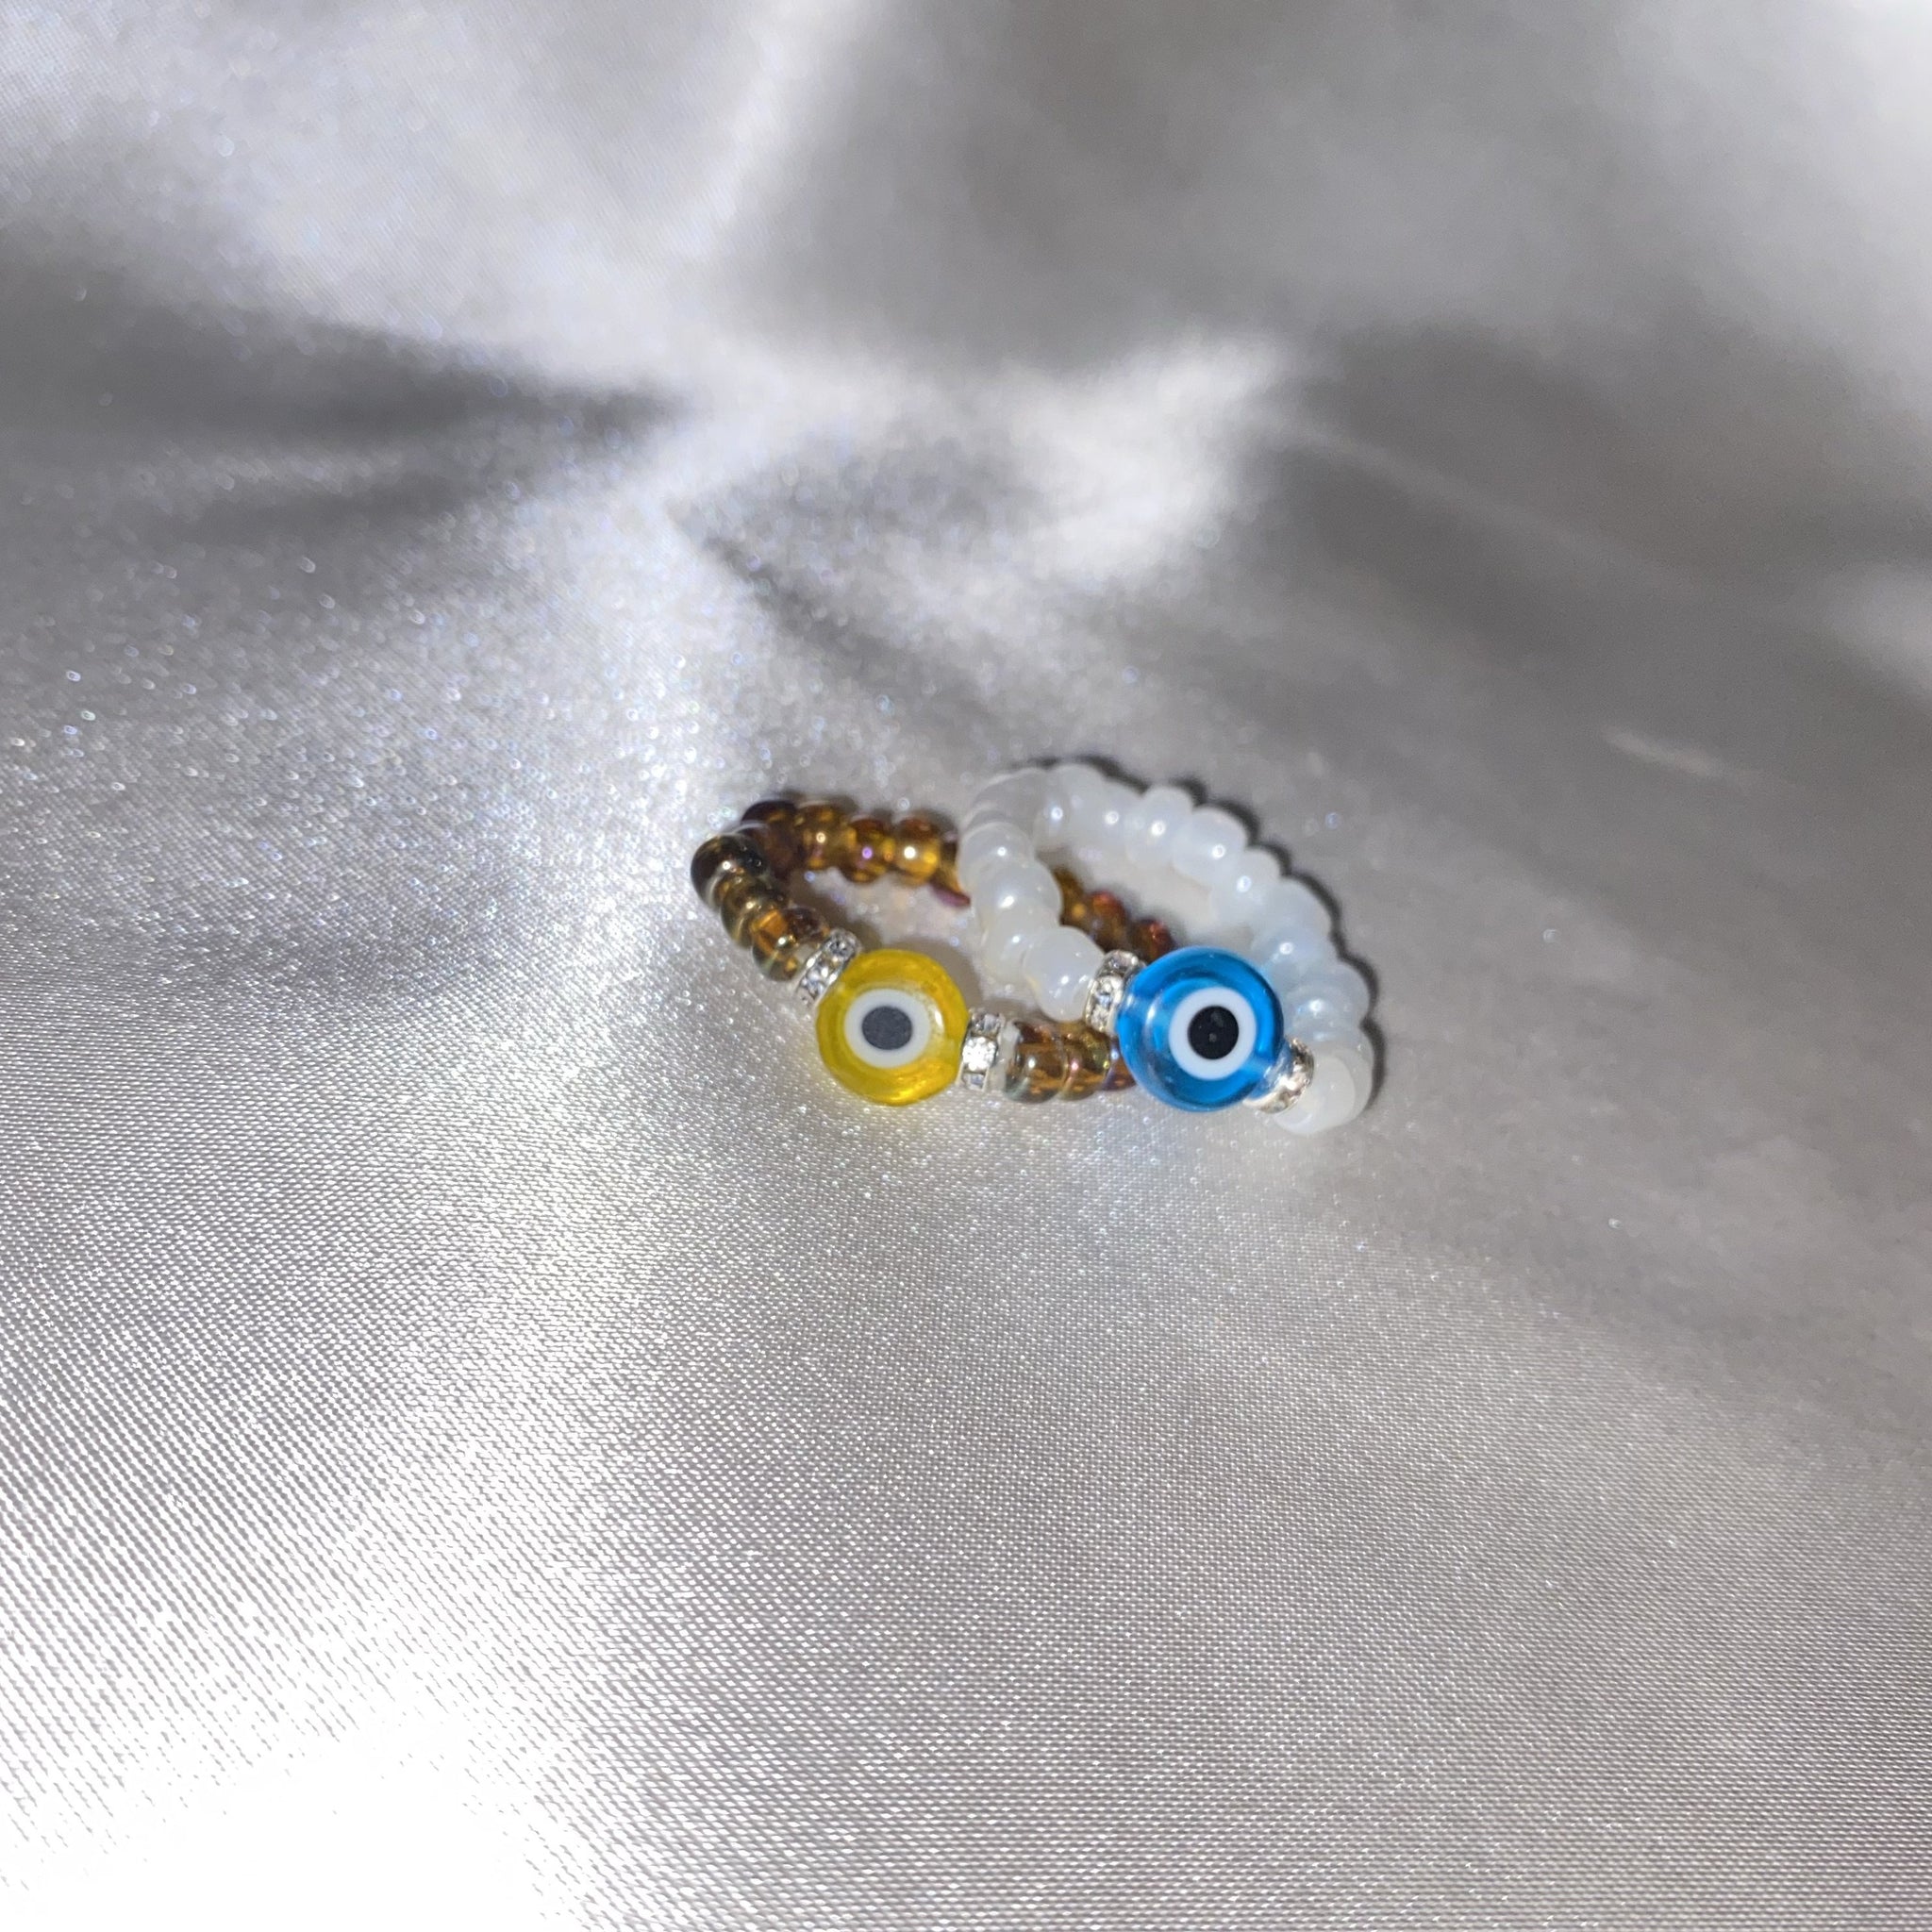 Evil Eye Mulit-Color Ring In Silver